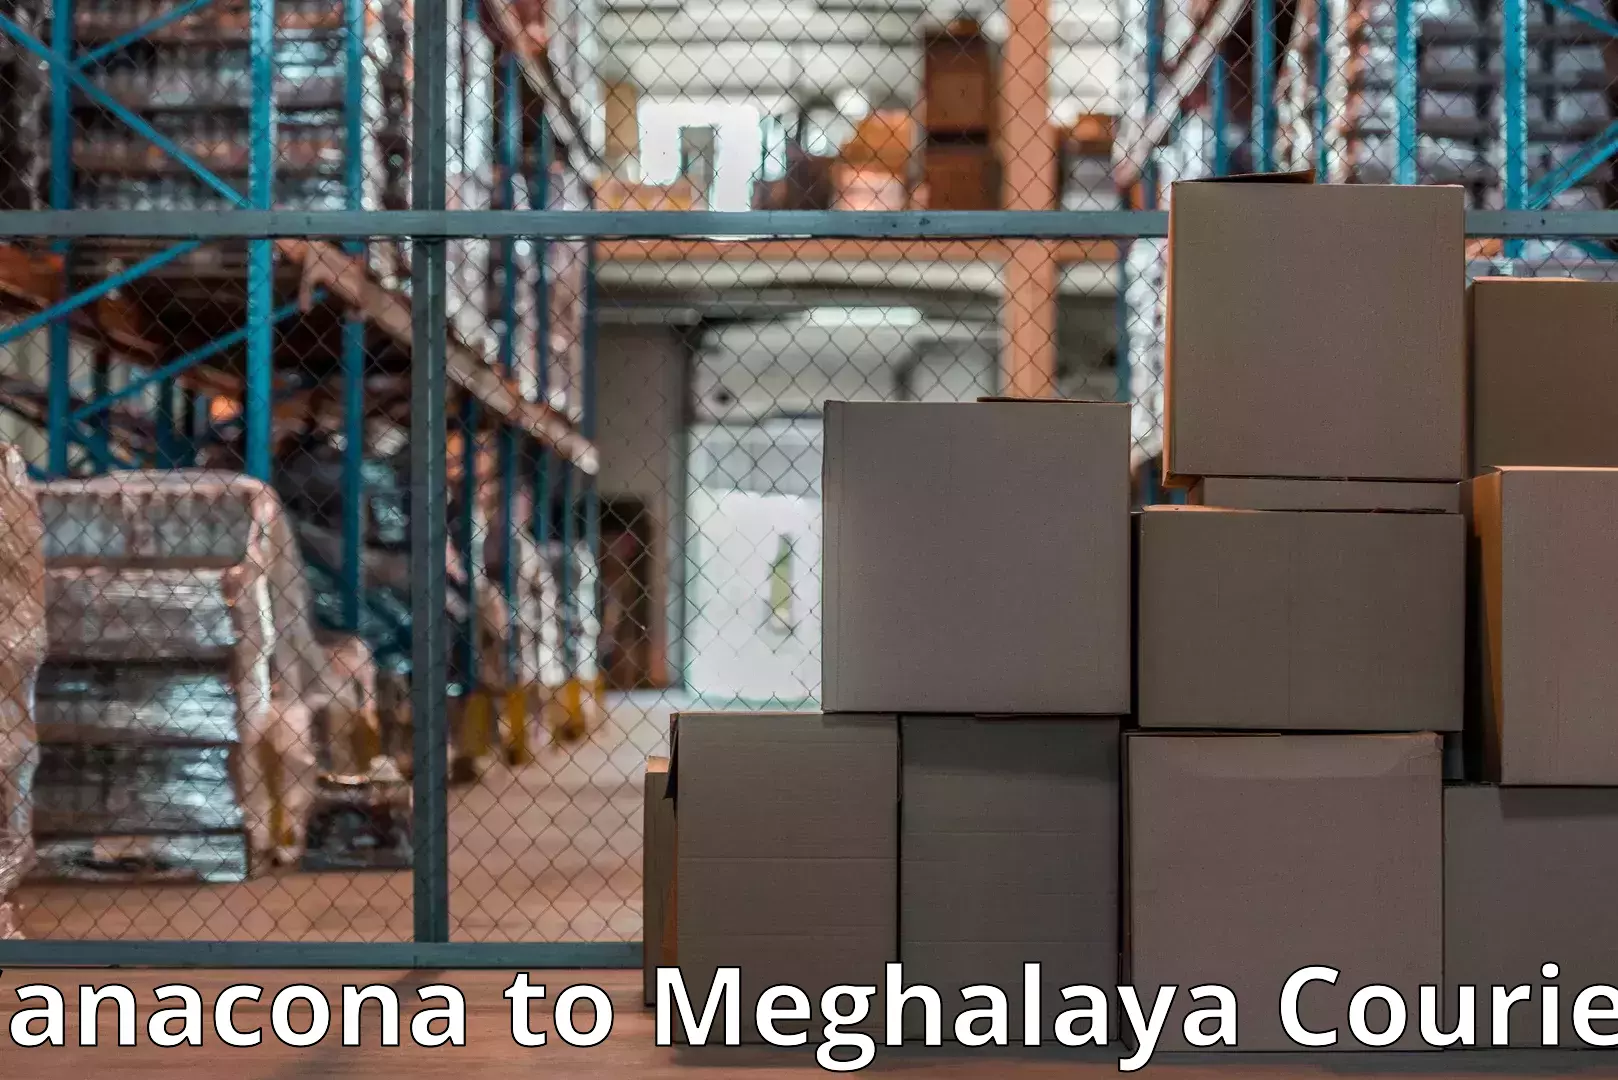 Furniture moving experts Canacona to Meghalaya